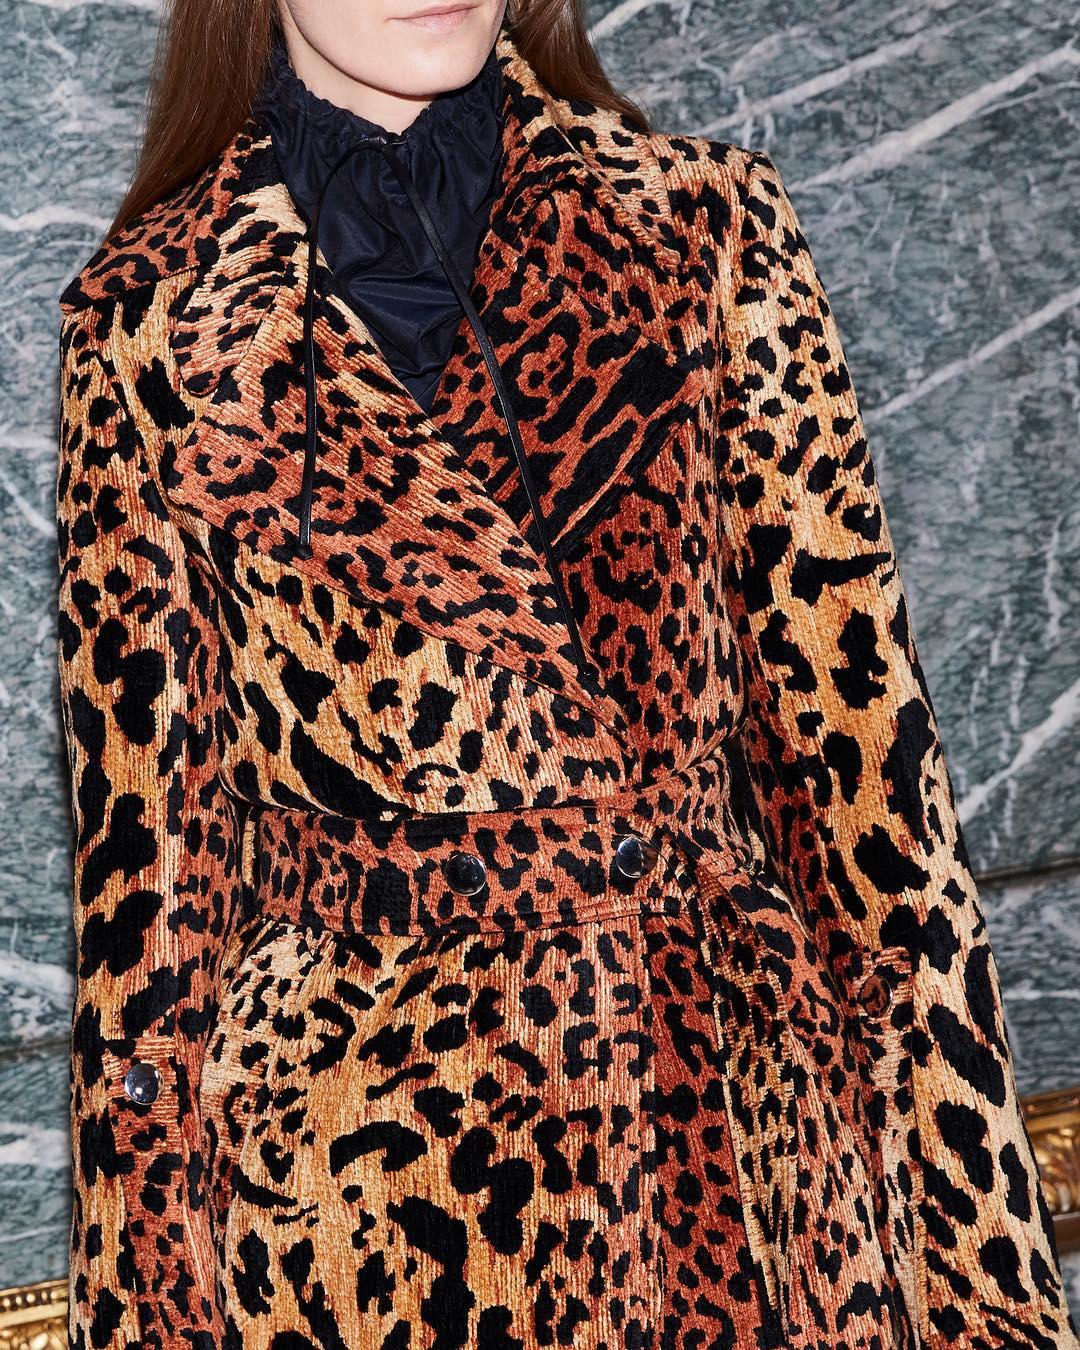 Виктория Бекхэм возвращает моду на леопард. Не поверите, но выглядит это очень стильно!